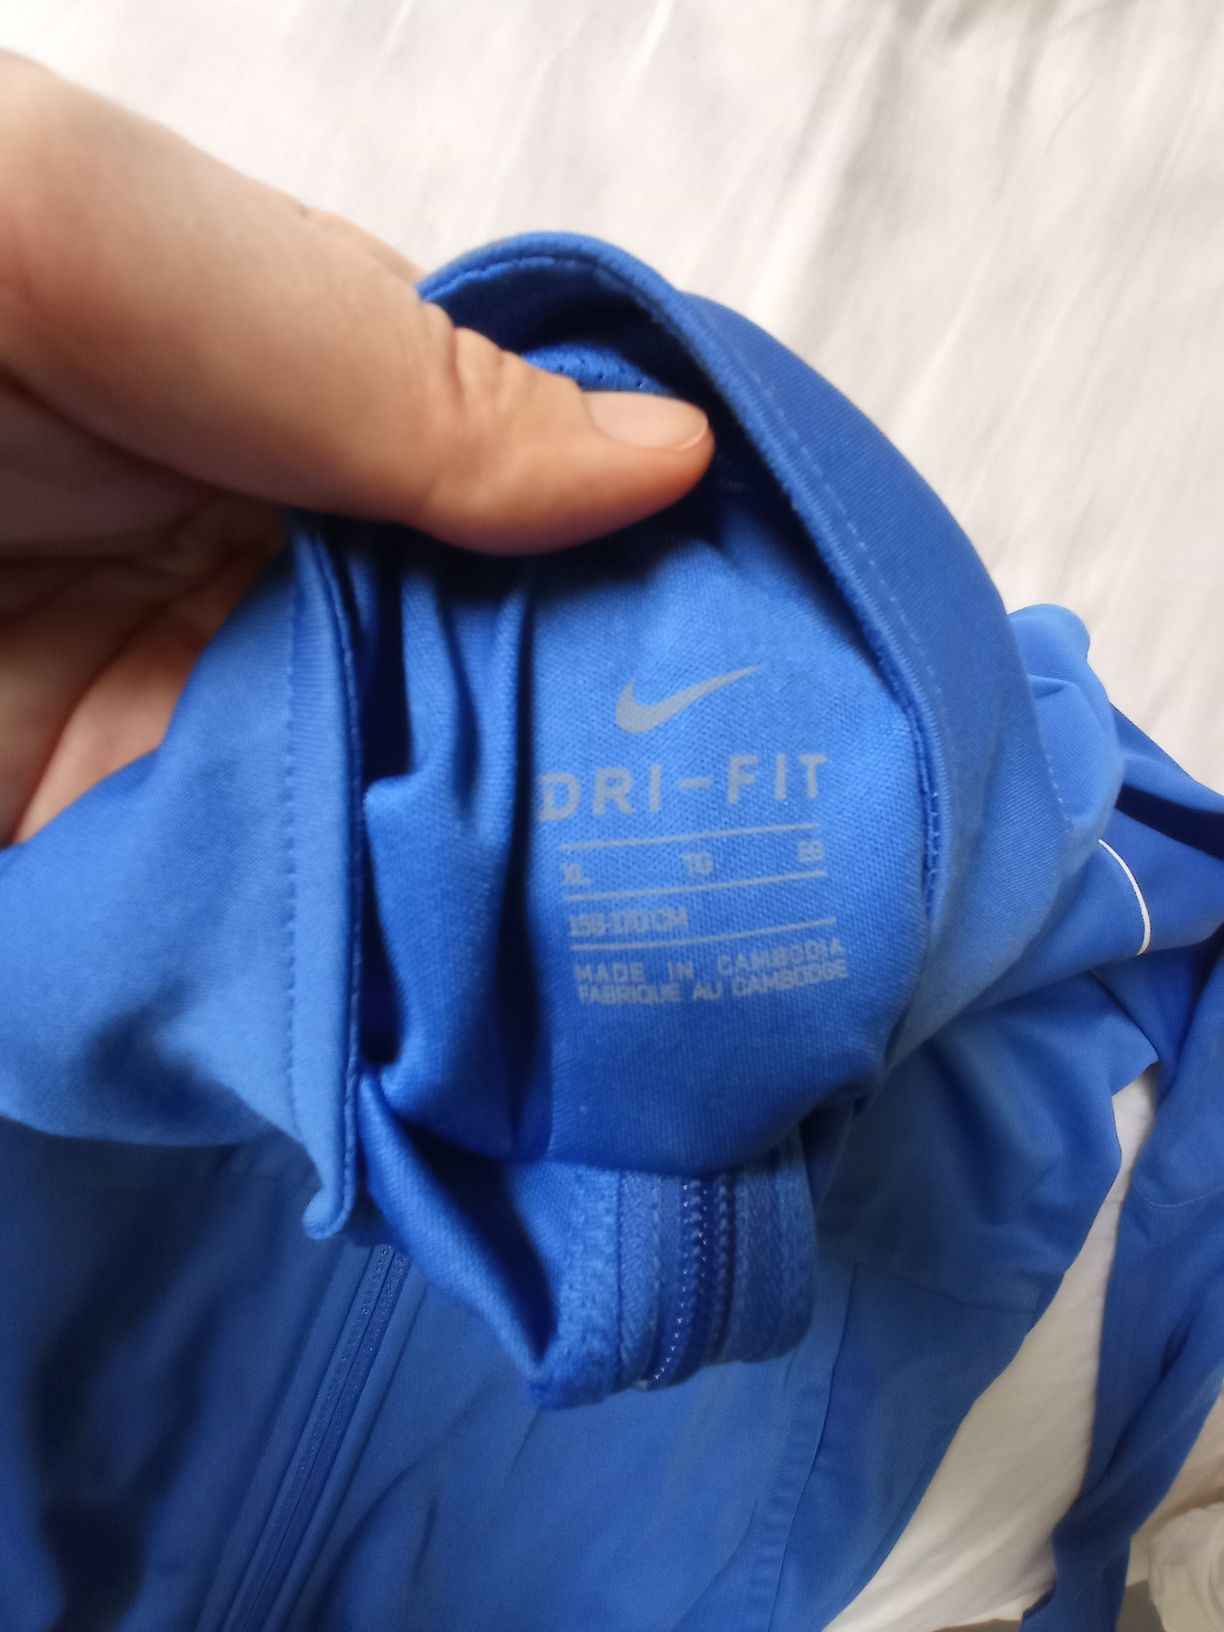 Bluza Nike Dry-fit Olimpic rozmiar XL